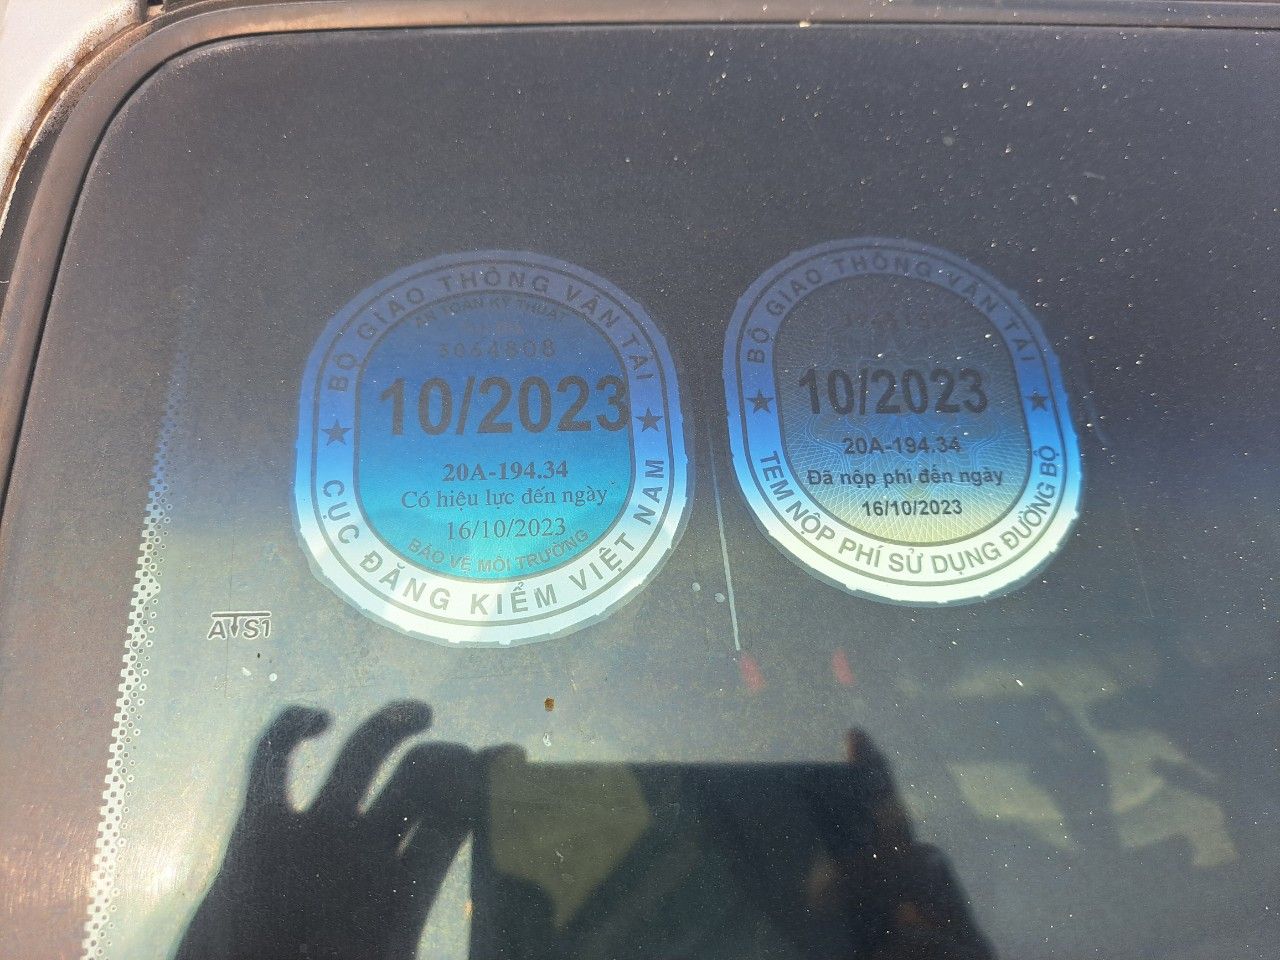 Chevrolet Spark 2011 - Giá 115tr